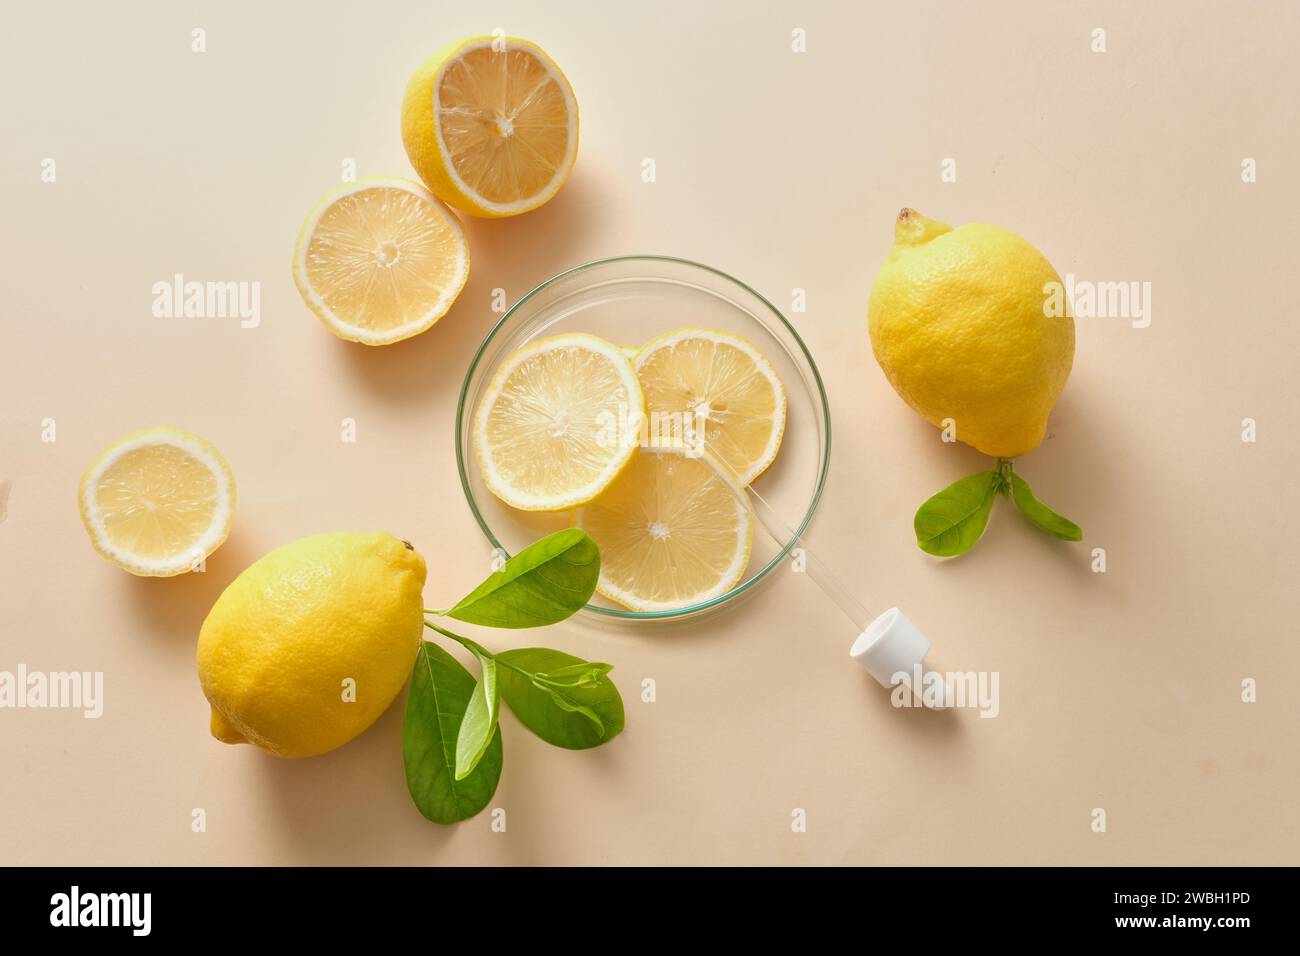 Scena promozionale per cosmetici e prodotti per la cura della pelle con vitamina C naturale - decorazione di limone fresco, fette di lime e foglie verdi su sfondo beige Foto Stock